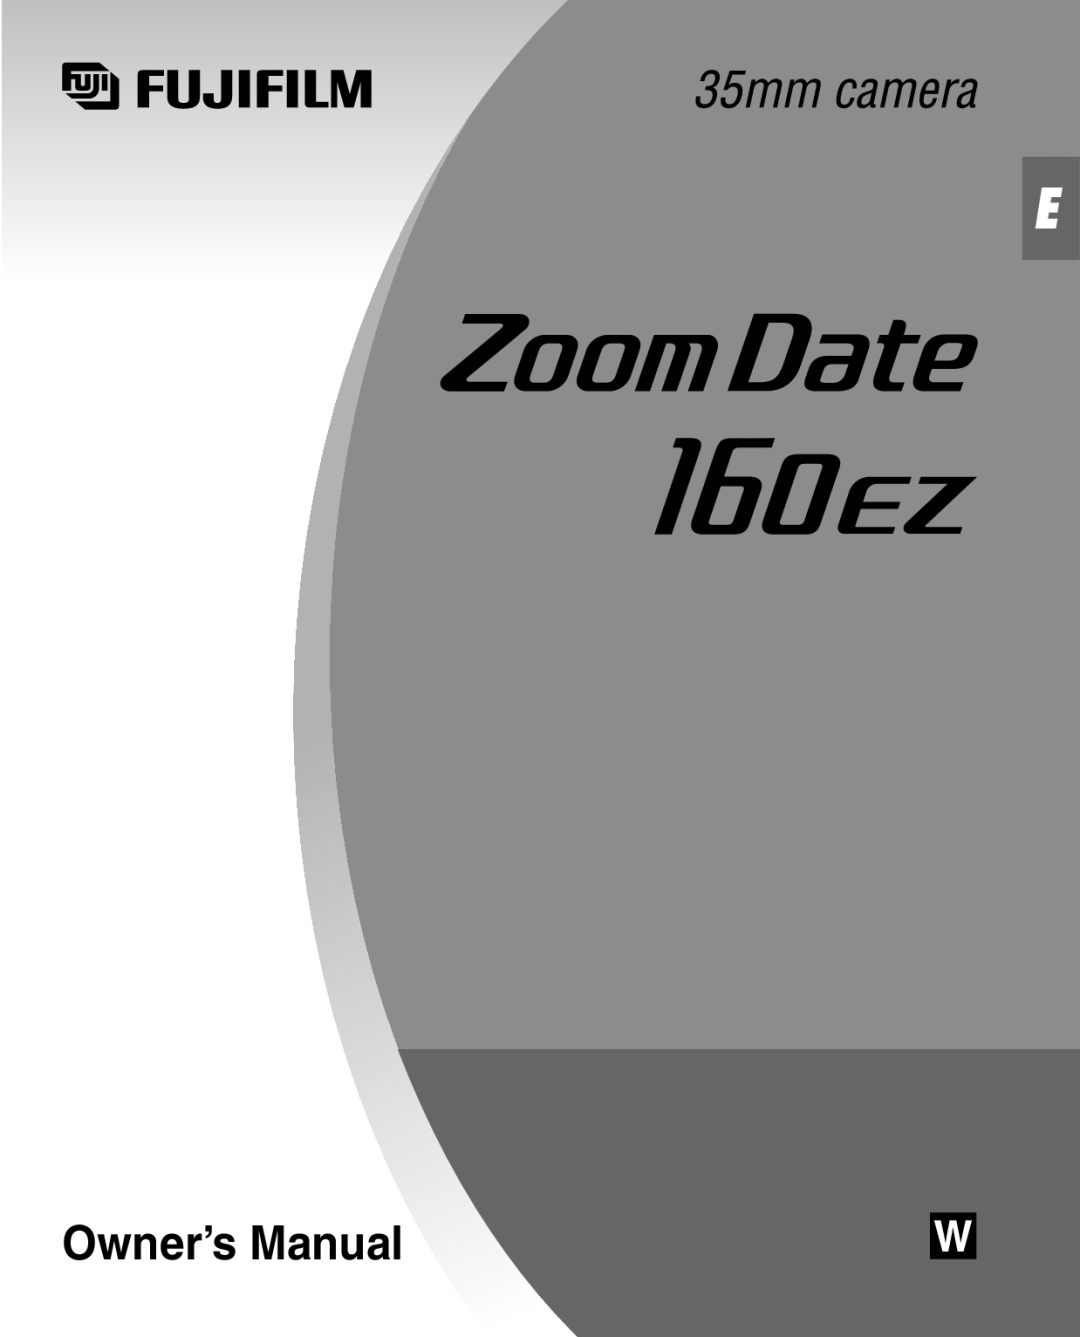 FujiFilm Zoom Date 160ez owner manual Owner’s Manual 